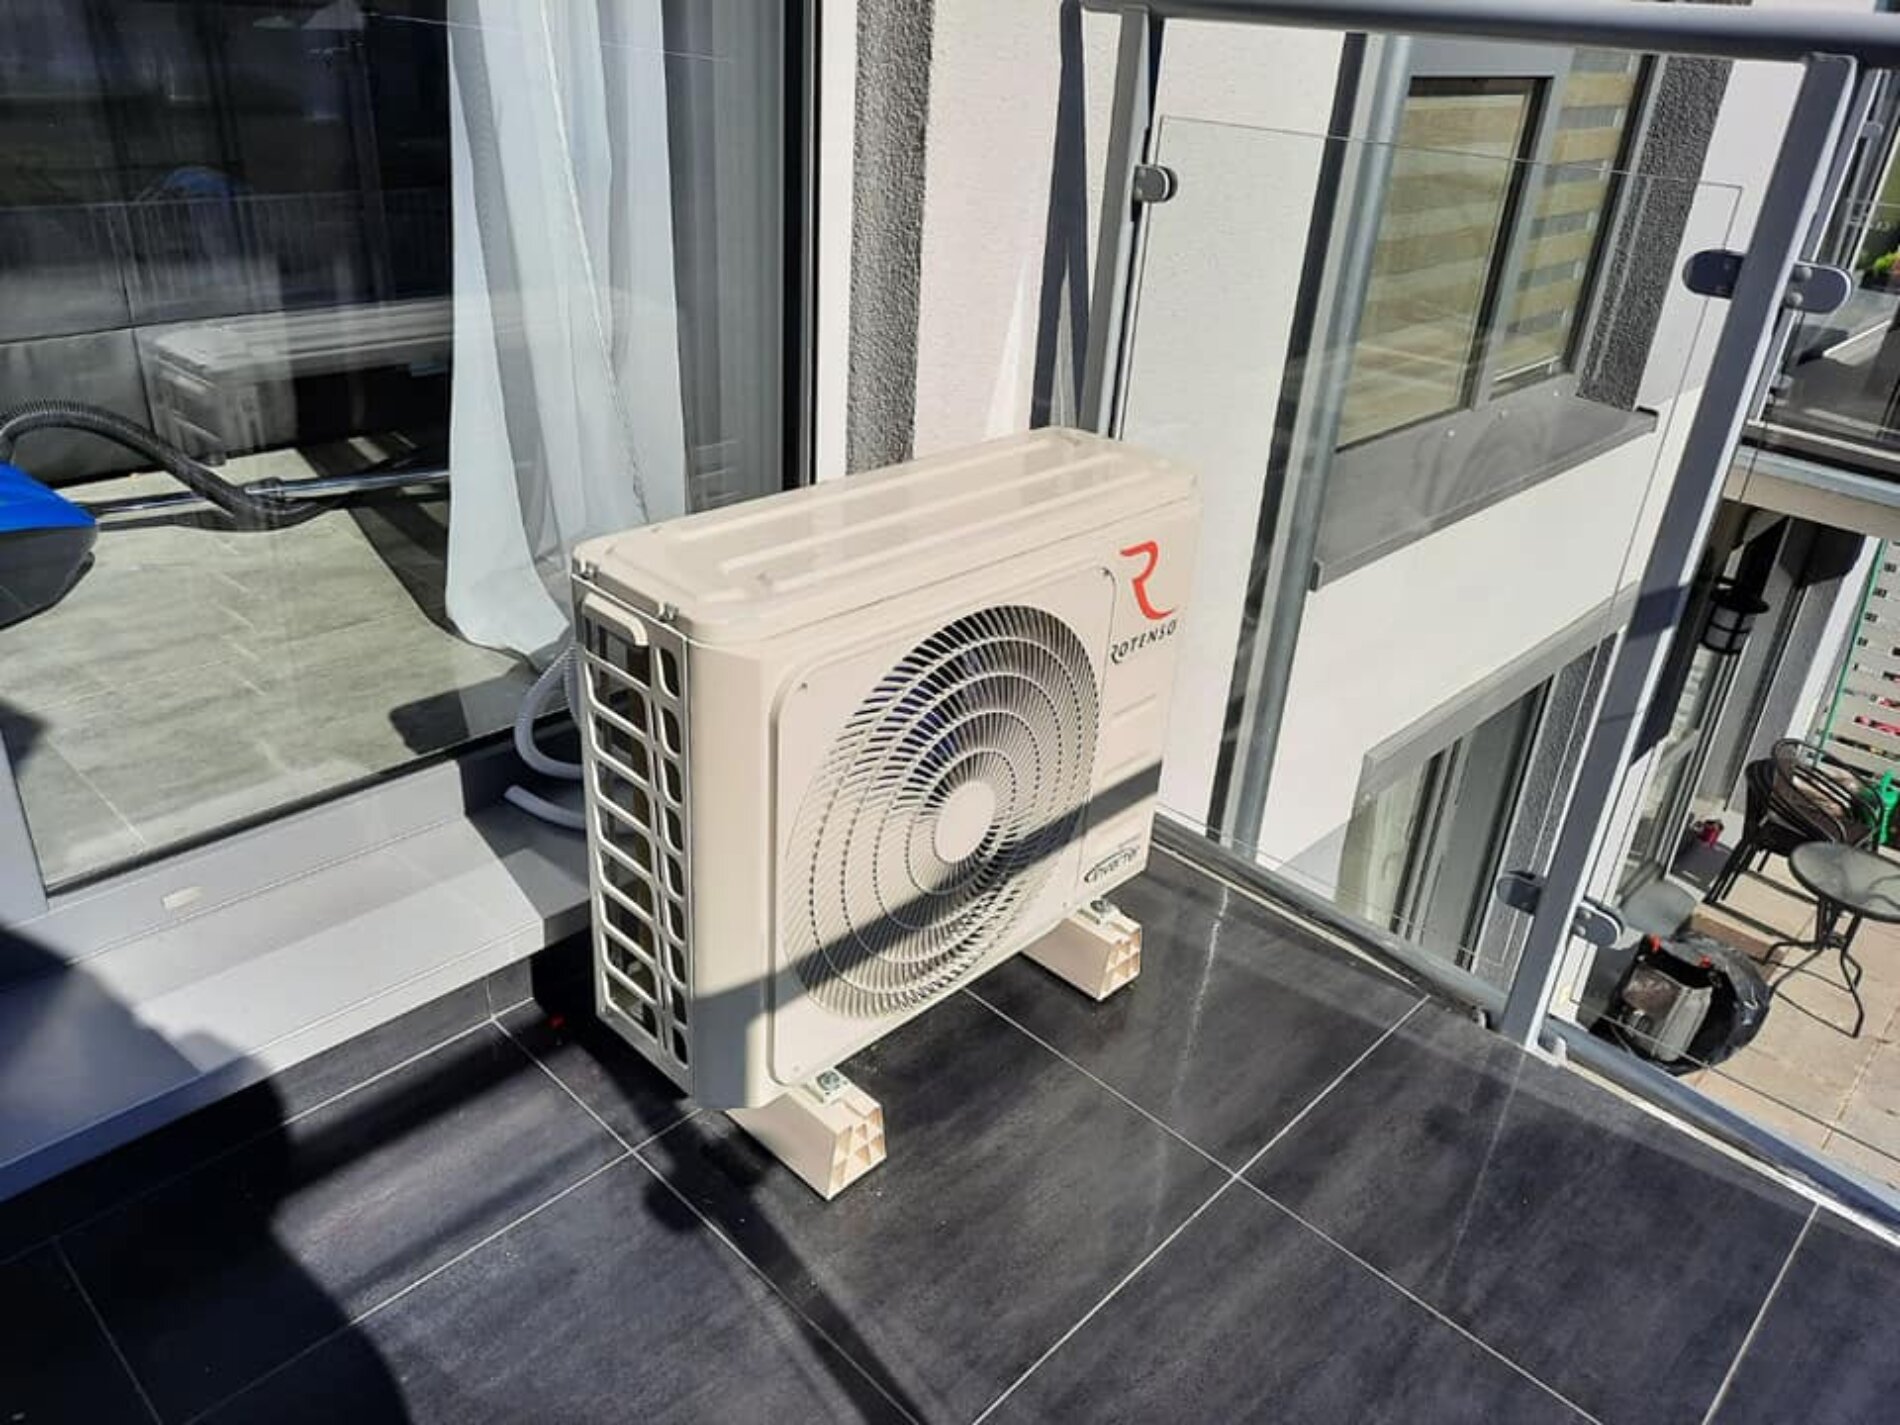 Klimatyzacja na balkonie – czy potrzebujesz zgody wspólnoty?